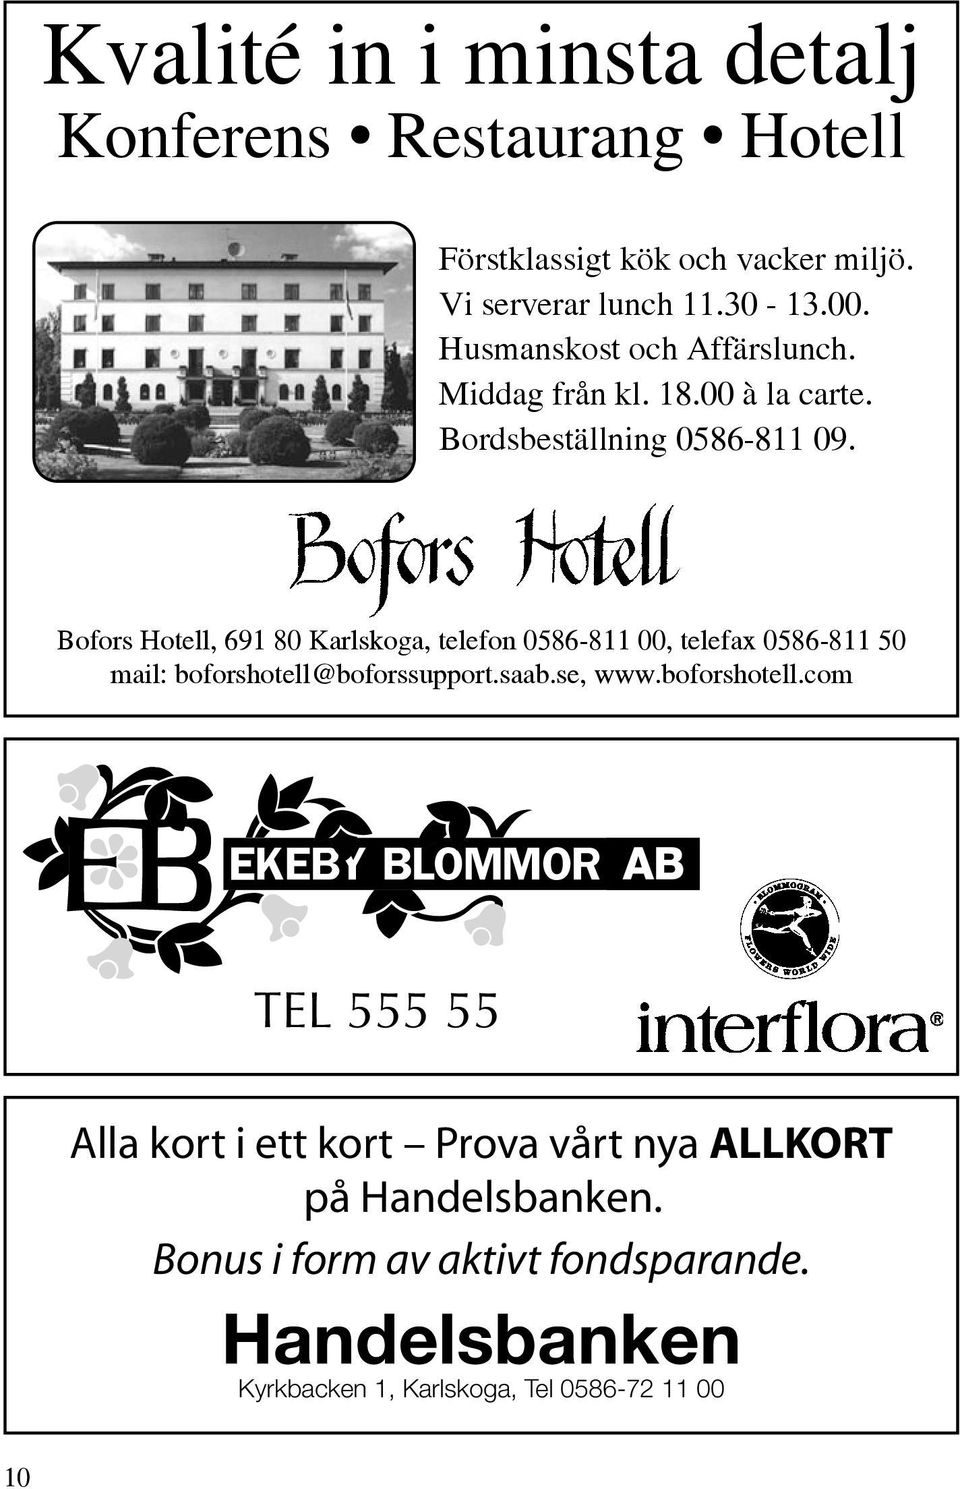 Bofors Hotell, 691 80 Karlskoga, telefon 0586-811 00, telefax 0586-811 50 mail: boforshotell@boforssupport.saab.se, www.